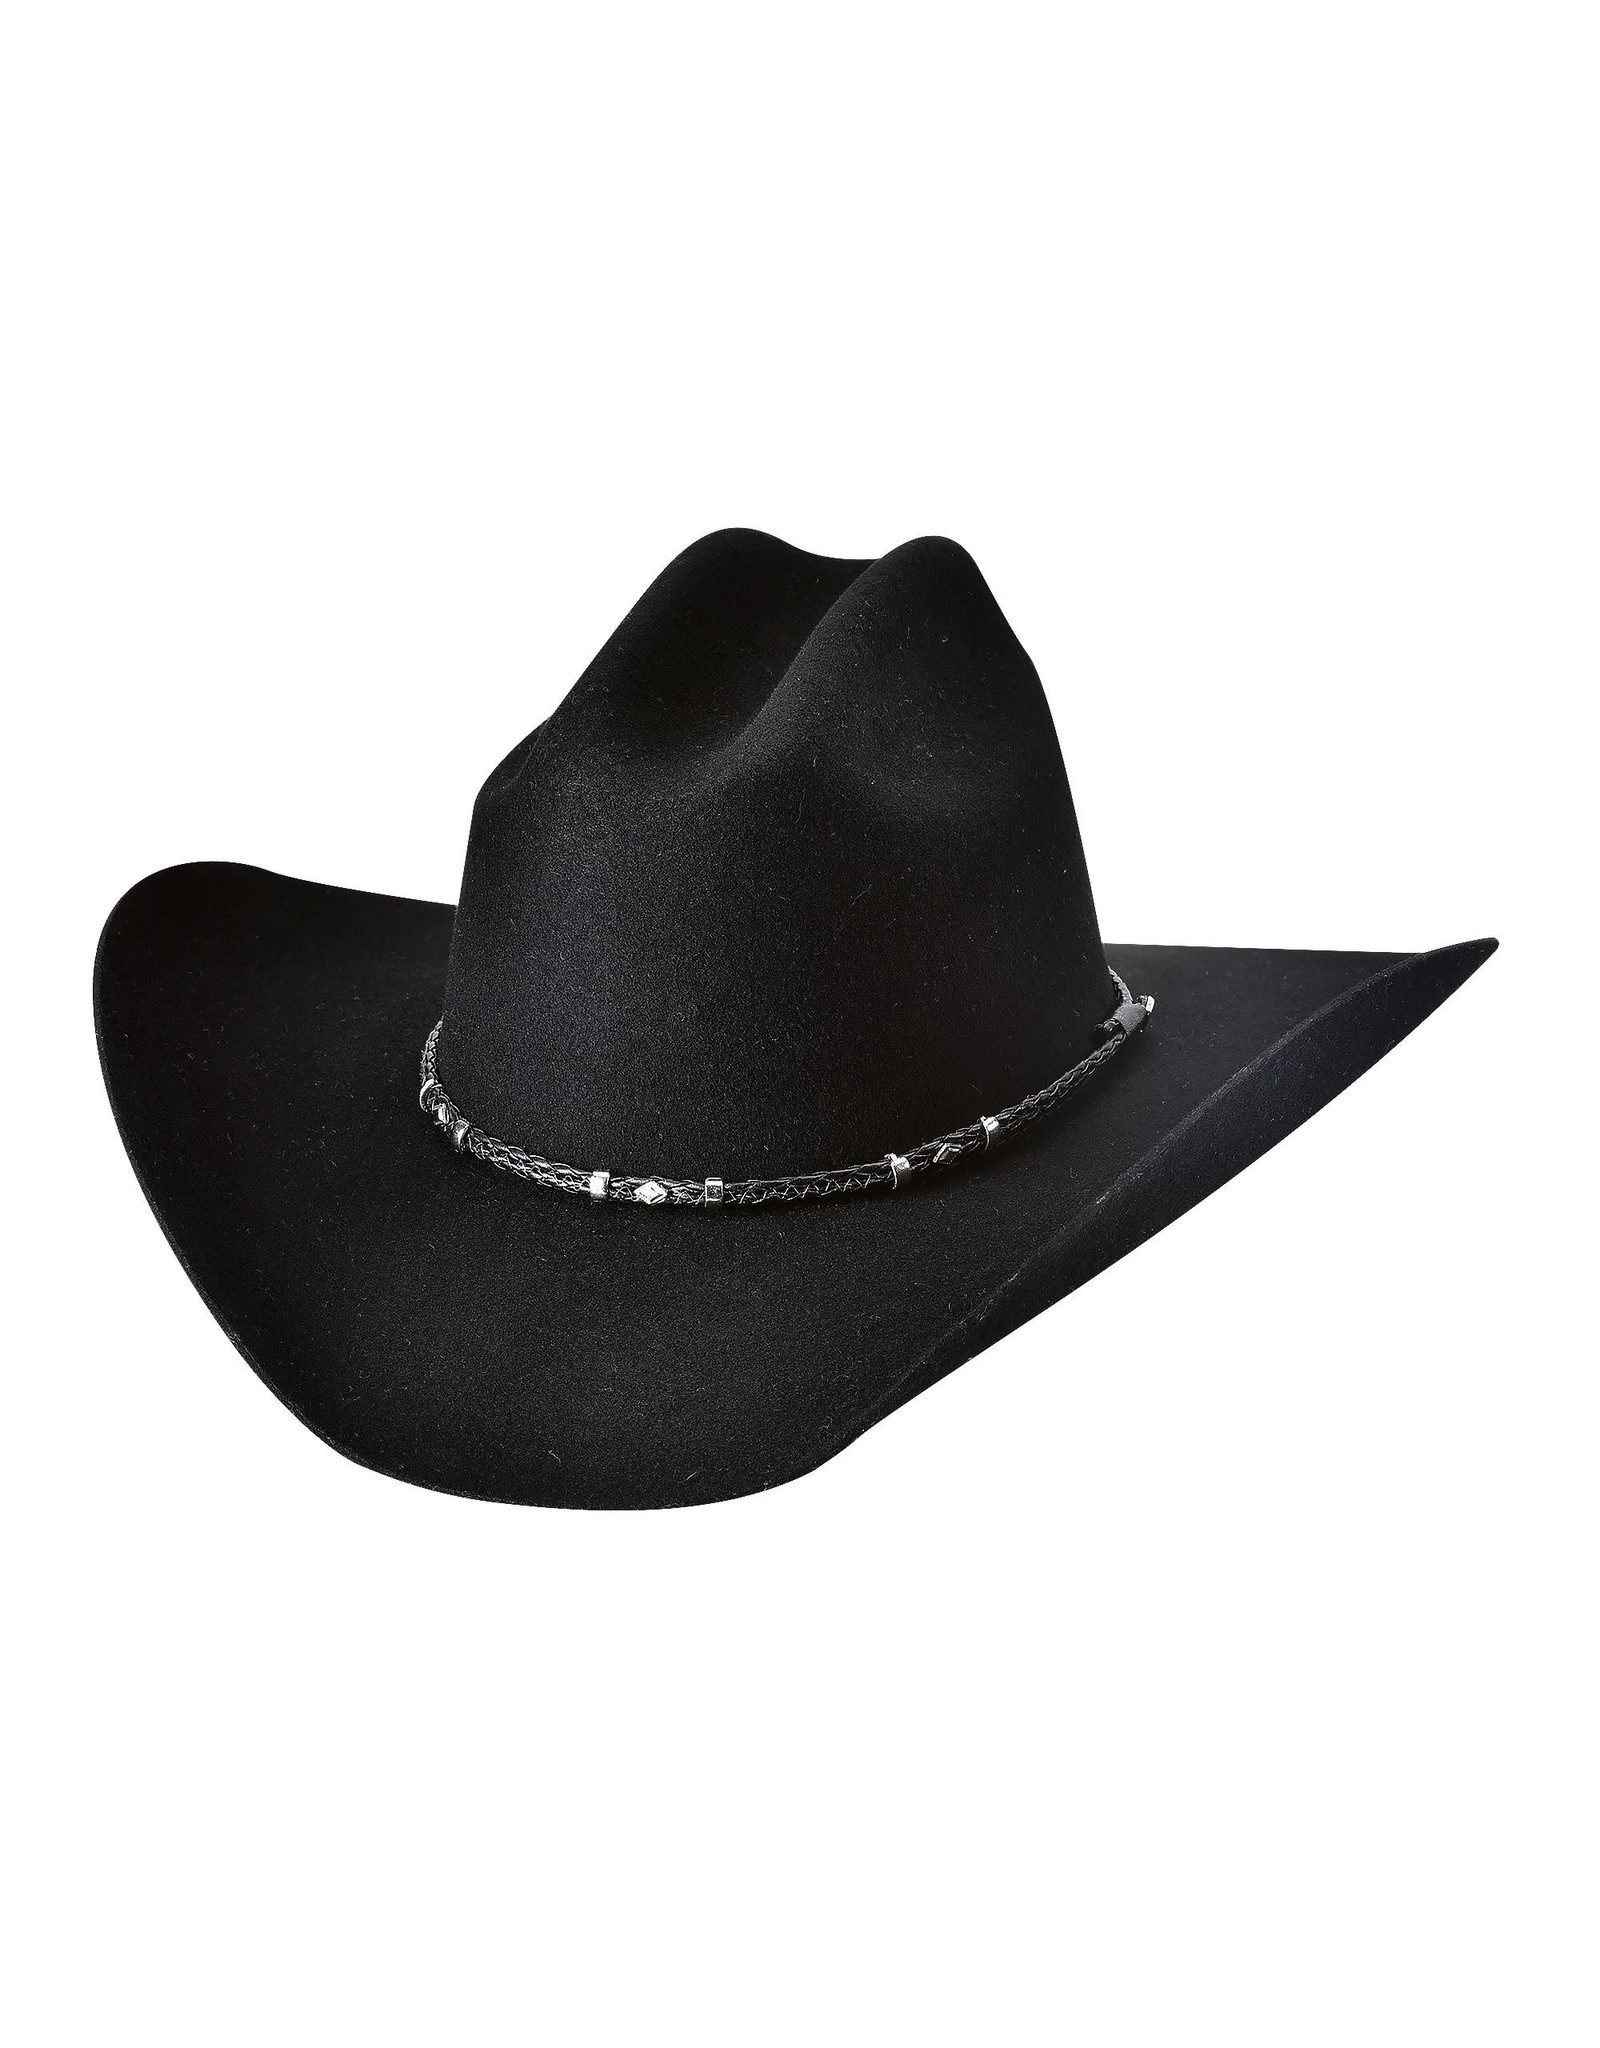 Bullhide Gholson 4X 0805BL Felt Black Cowboy Hat